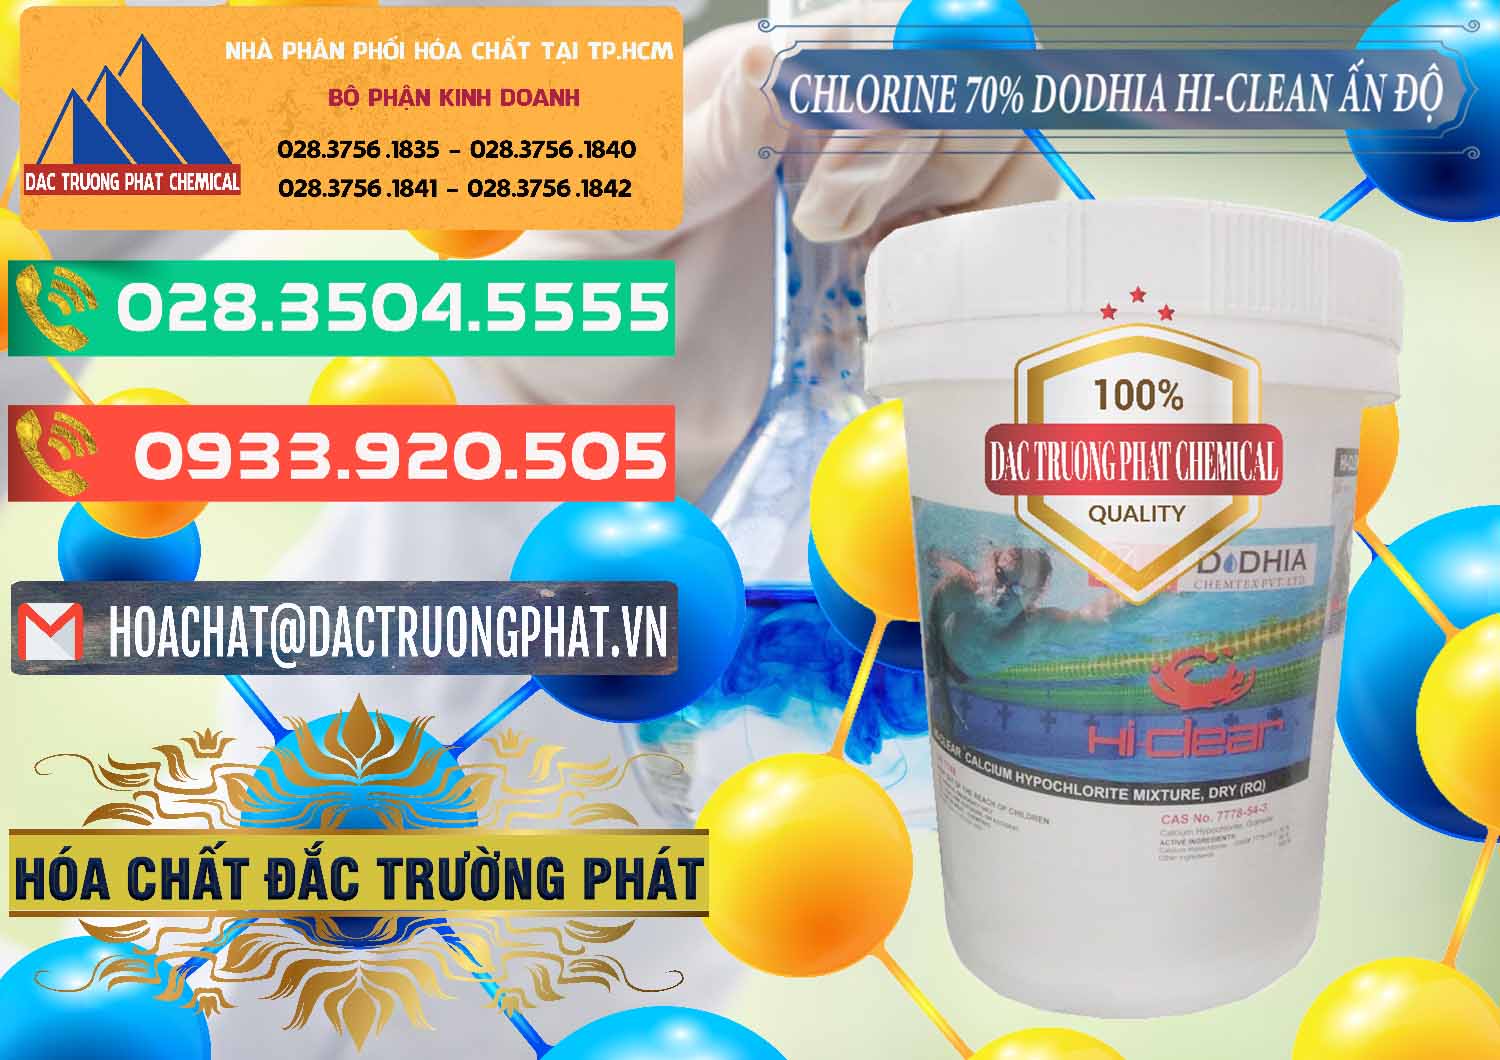 Chuyên bán - cung cấp Chlorine – Clorin 70% Dodhia Hi-Clean Ấn Độ India - 0214 - Cty phân phối & cung cấp hóa chất tại TP.HCM - congtyhoachat.com.vn